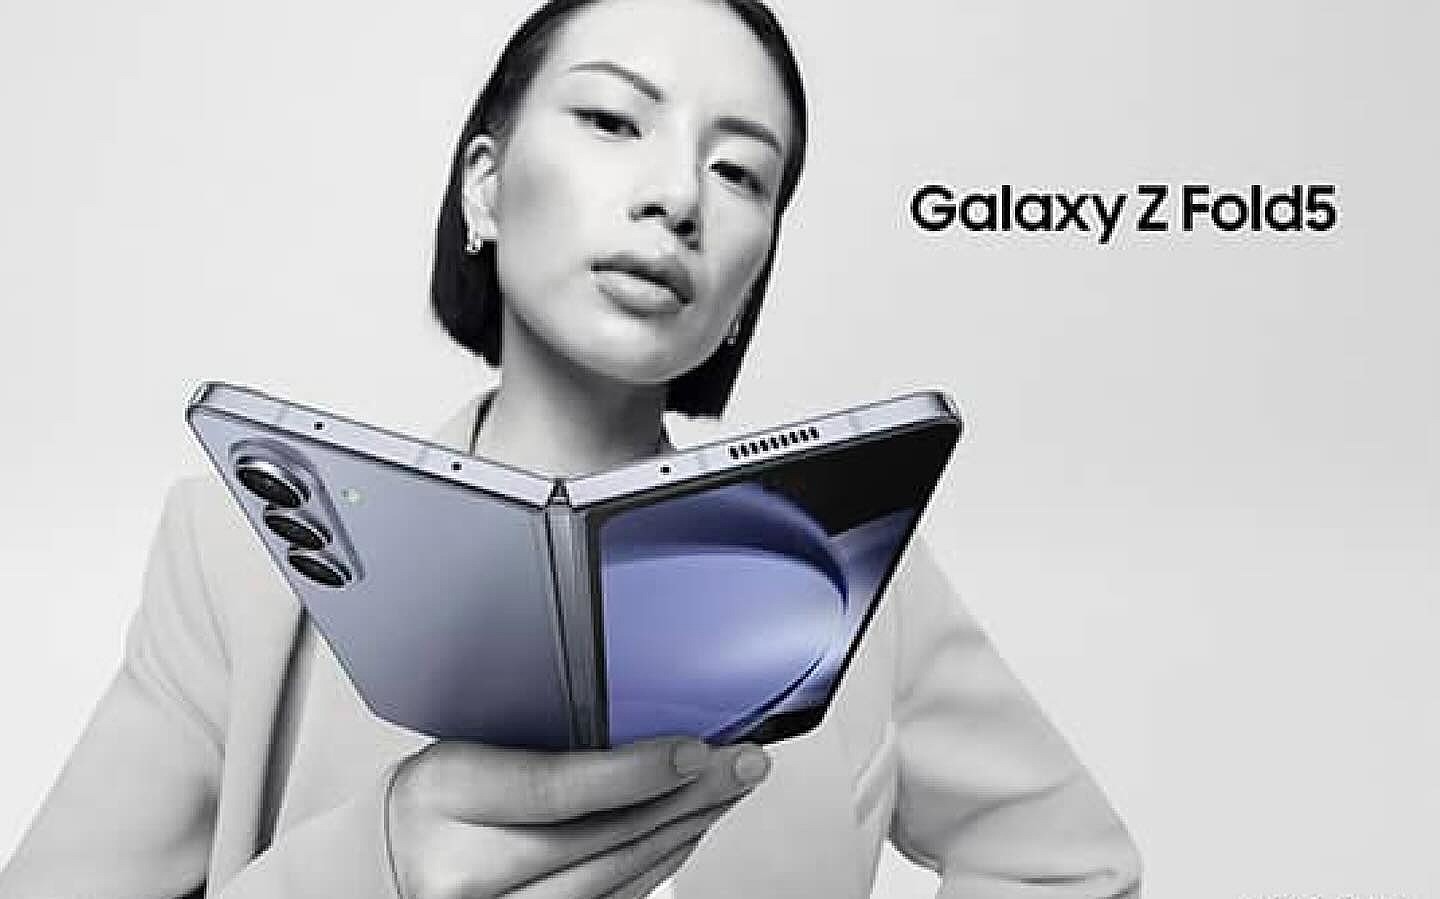 消息称三星 Galaxy Z Fold 5 折叠屏新机将推配有 S Pen 笔槽的手机壳 - 3